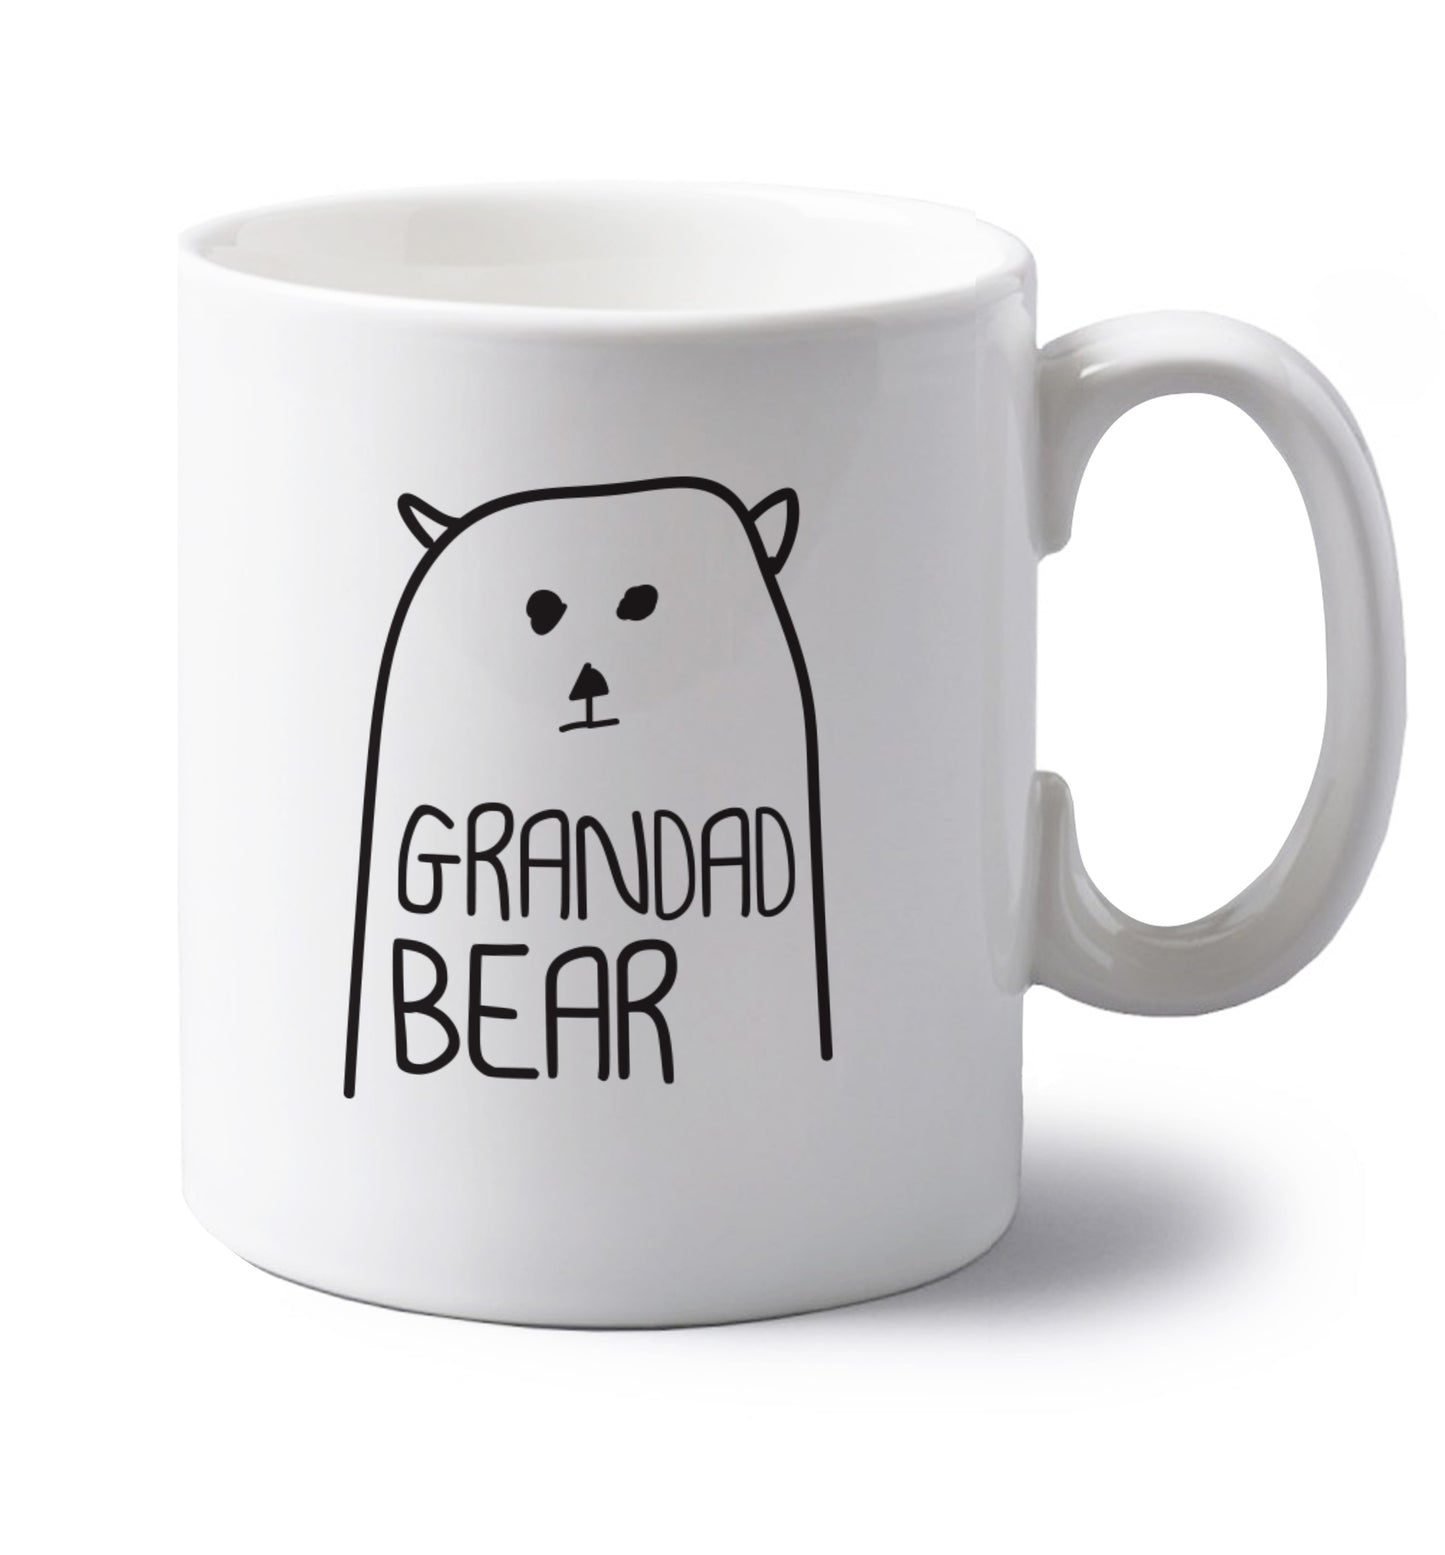 Grandad bear left handed white ceramic mug 